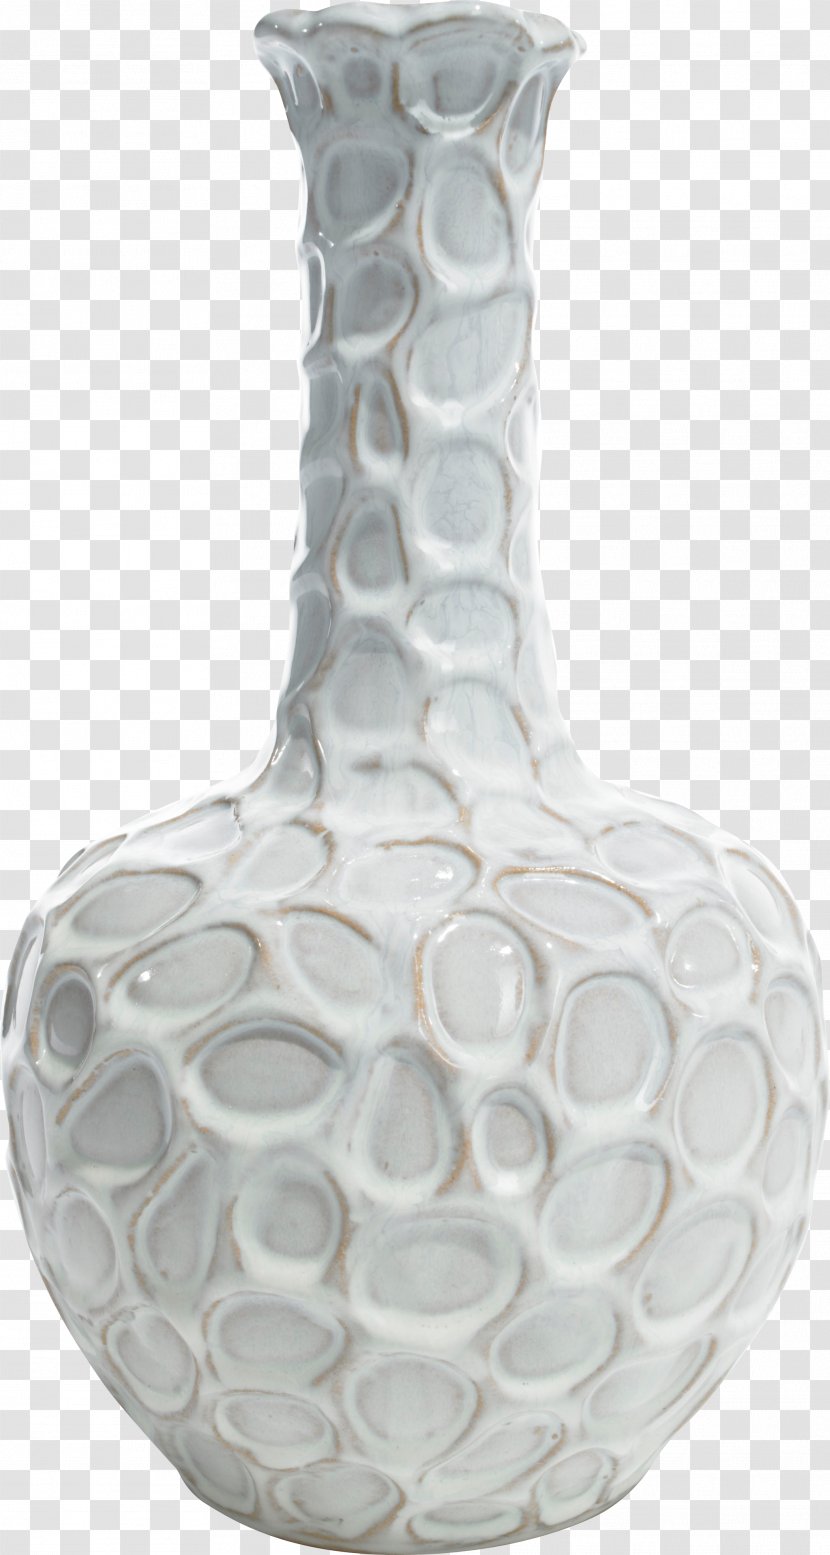 Vase Download Google Images - Pebble Transparent PNG